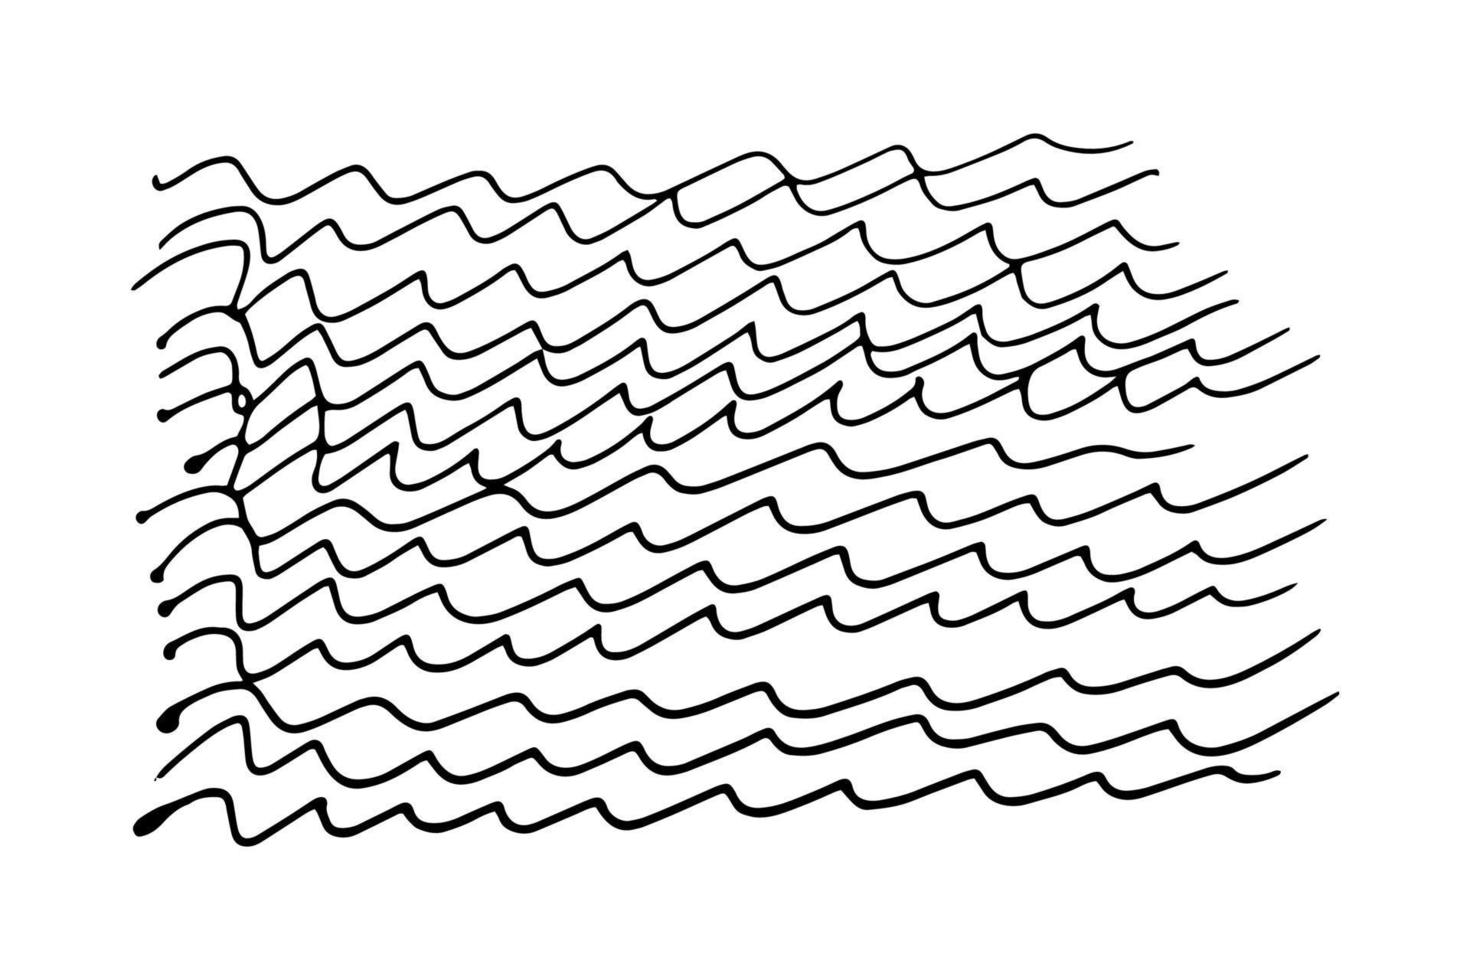 onde doodle stile doodle. linee ondulate disegnate a mano con noncuranza illustrazione su uno sfondo bianco vettore